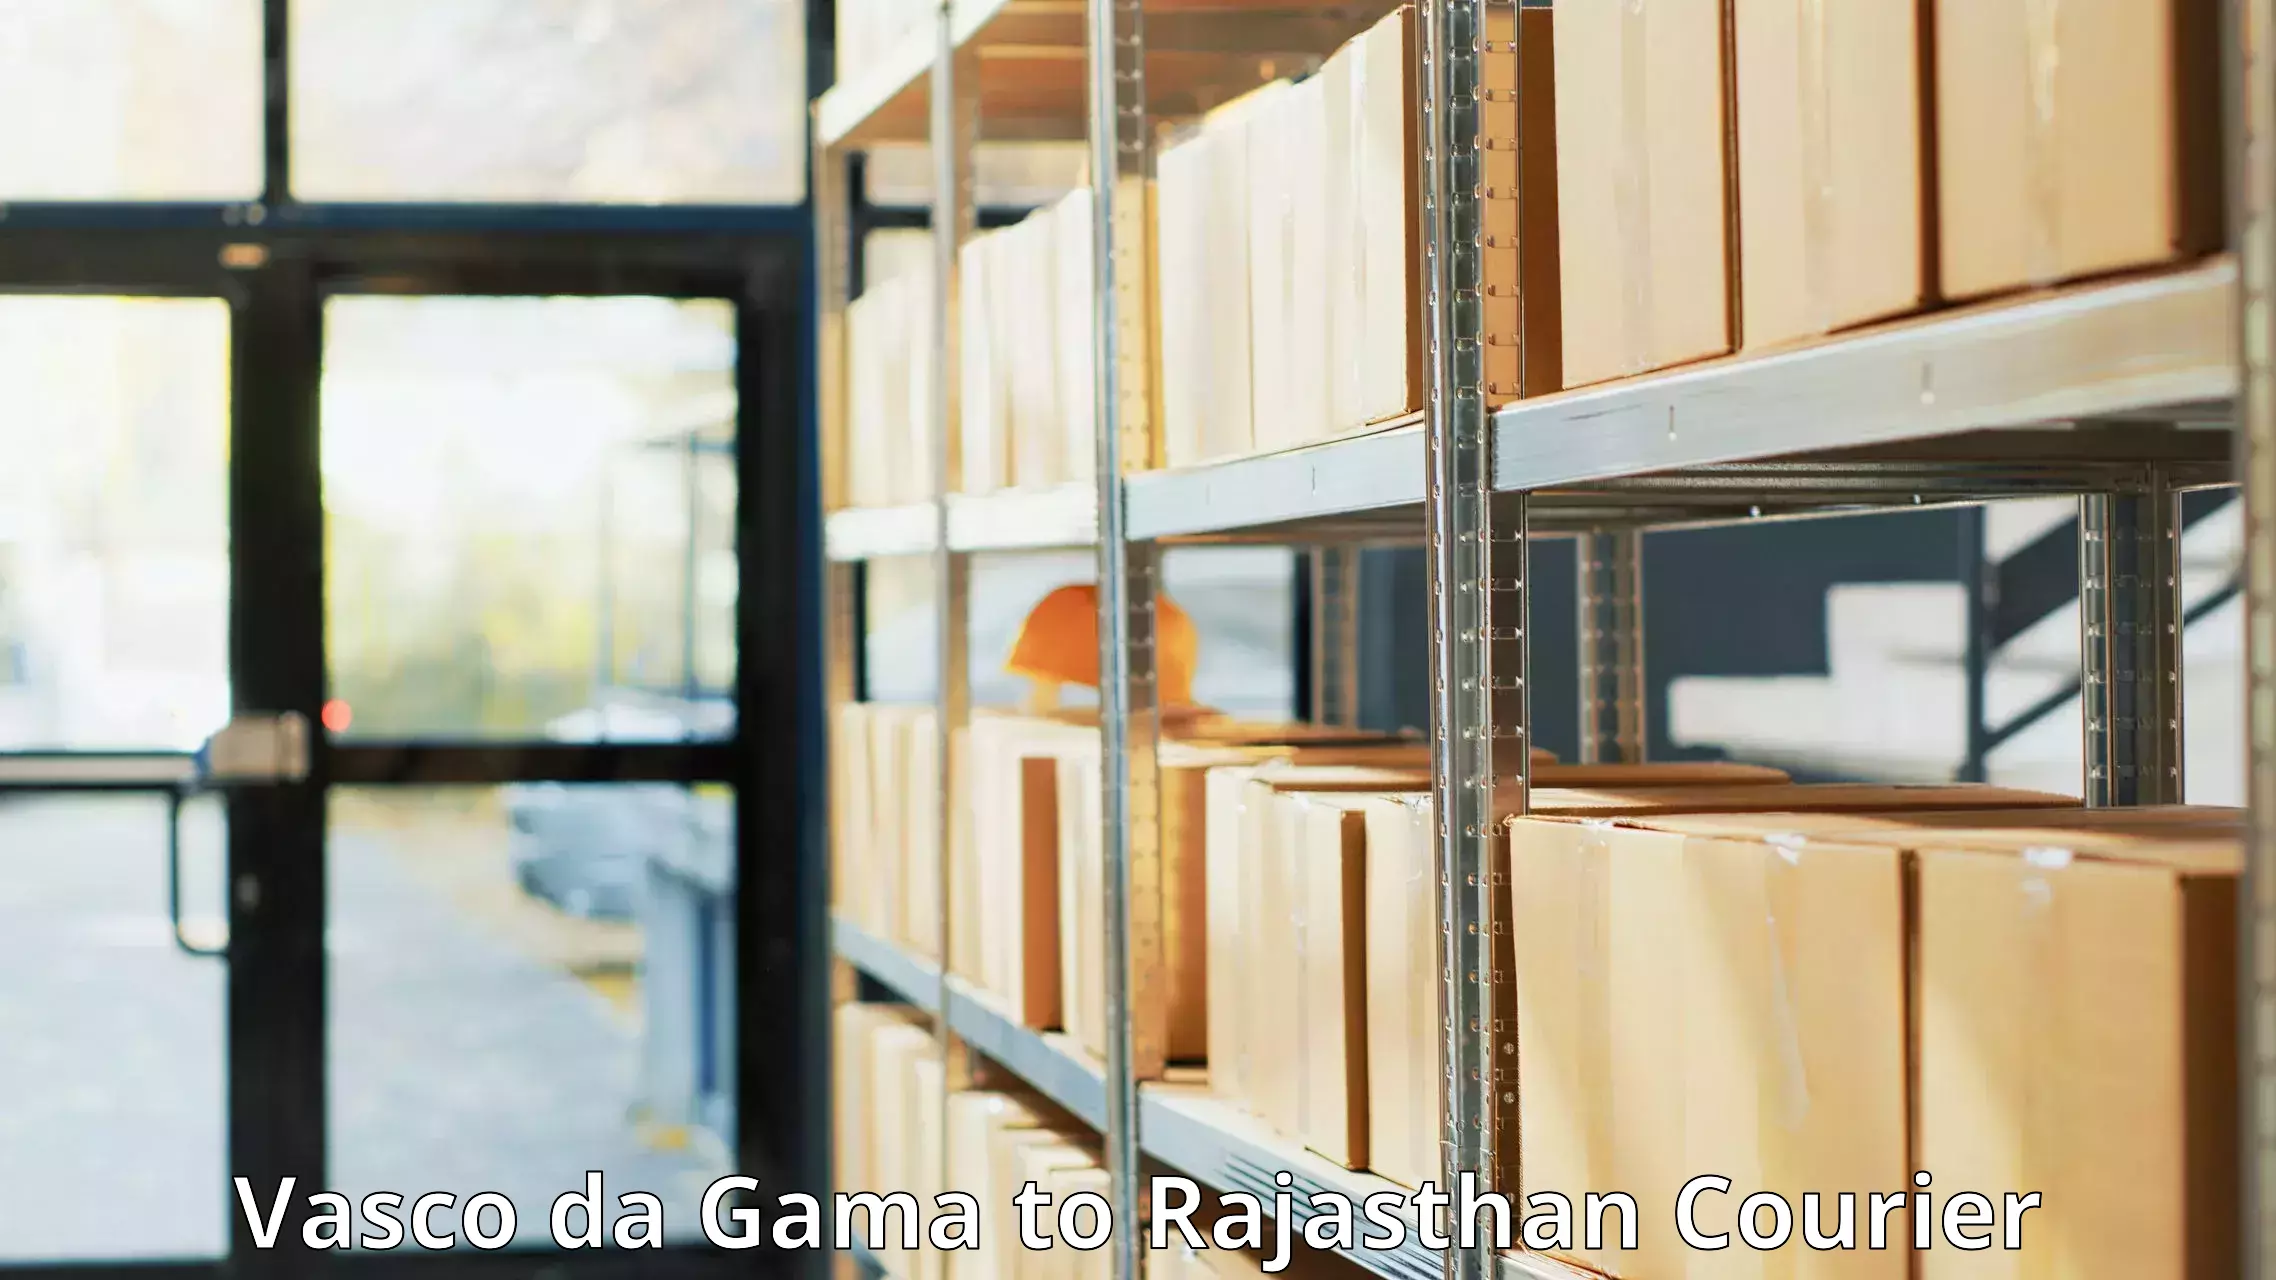 Premium courier services Vasco da Gama to Raipur Pali